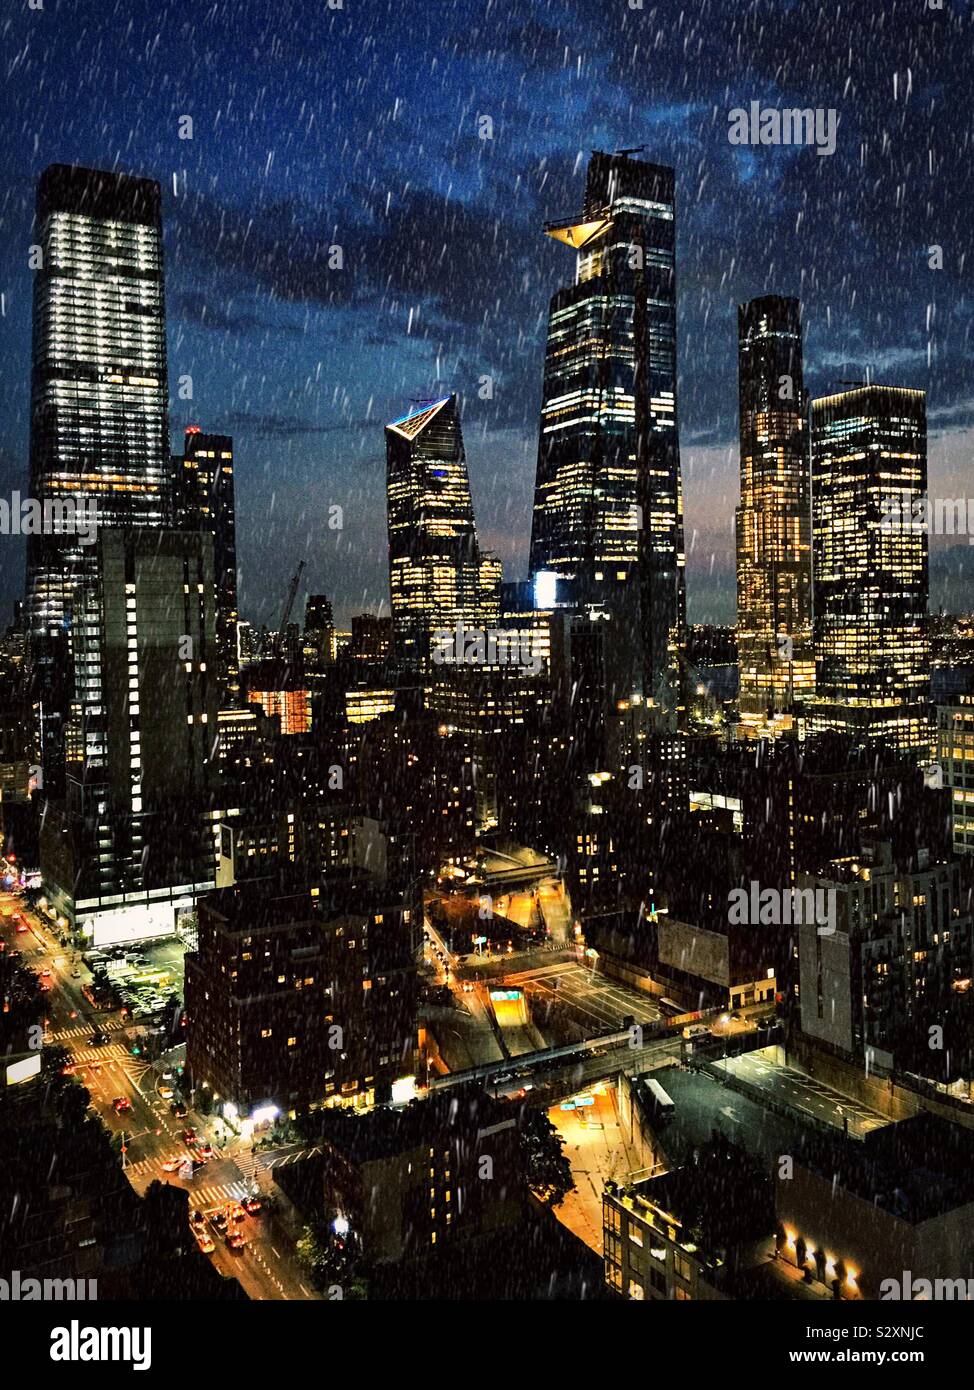 New York at night Stock Photo